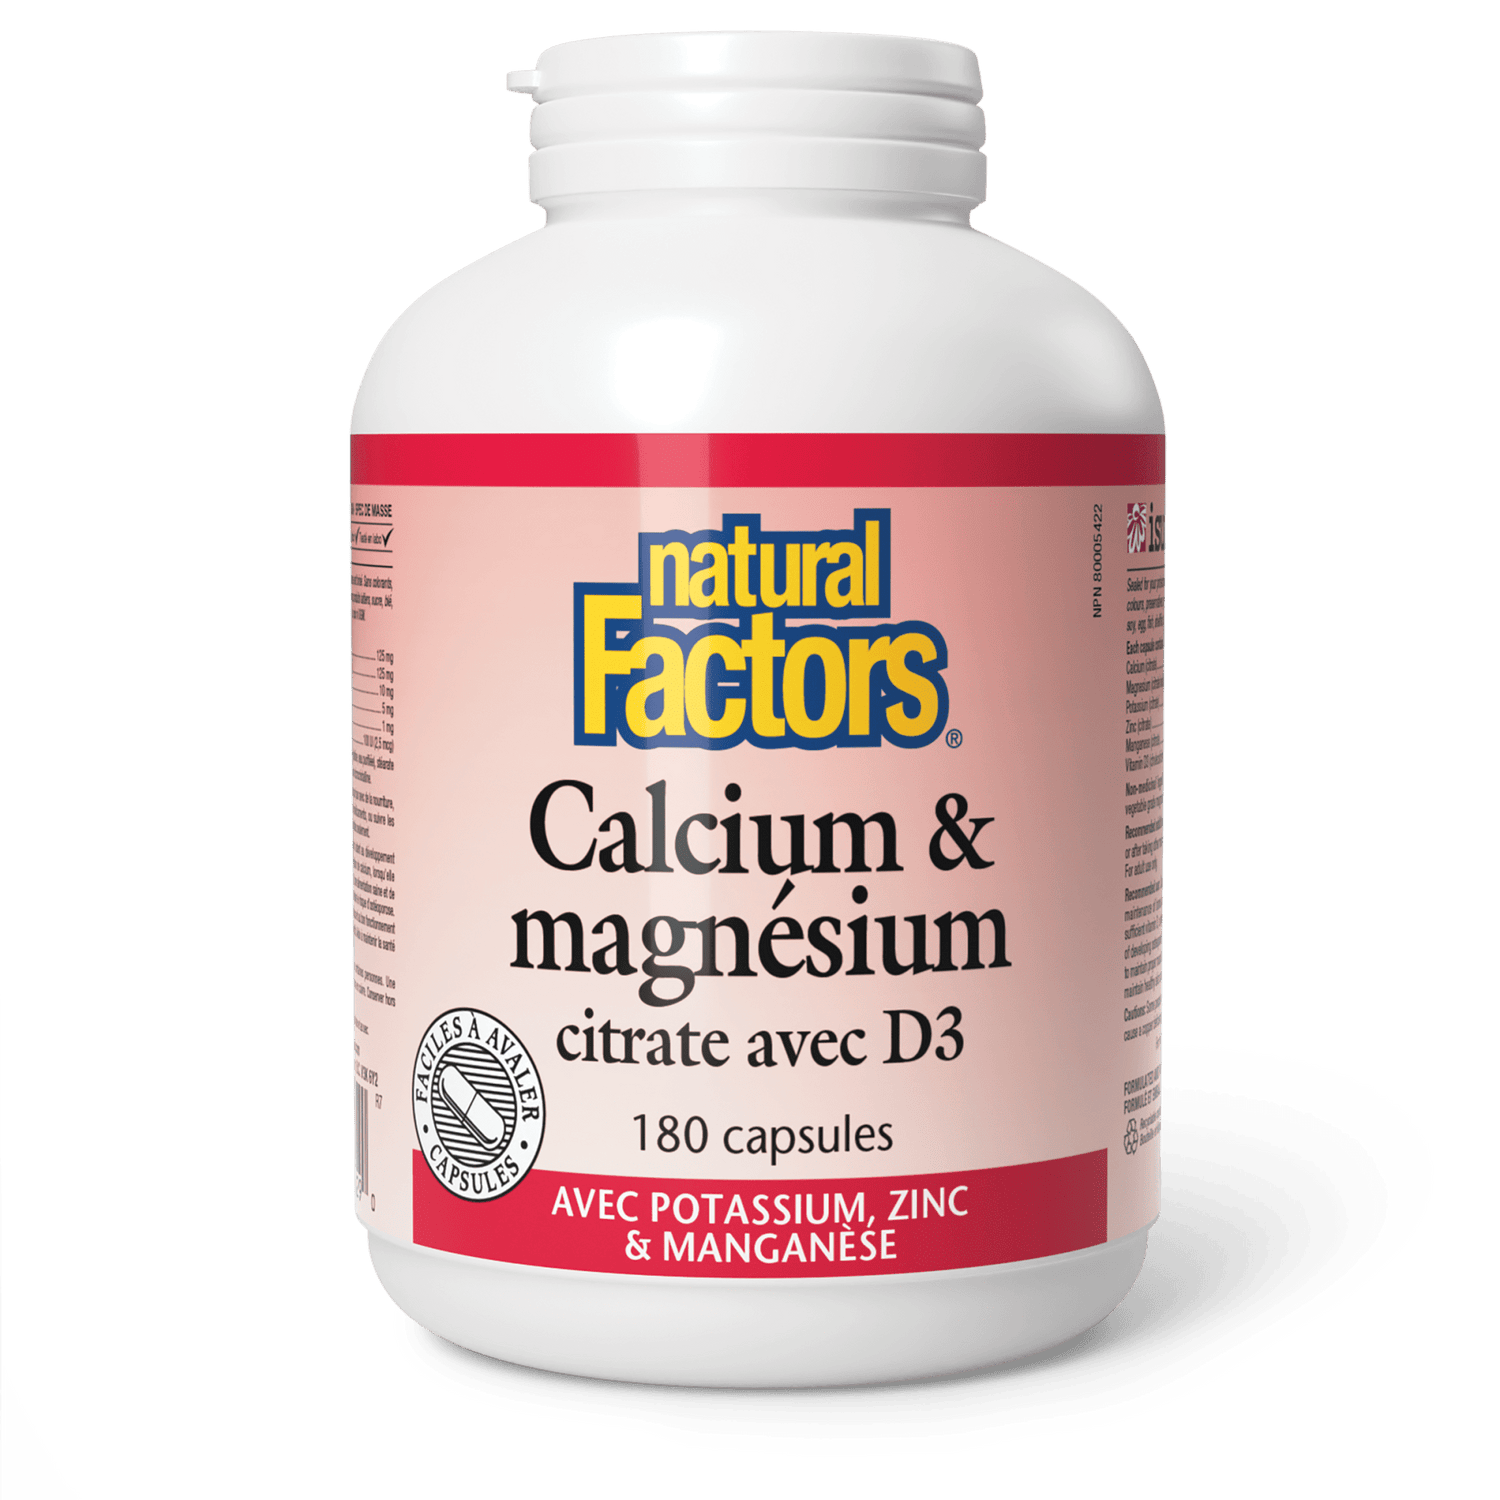 Calcium & magnésium citrate avec D3 avec potassium, zinc & manganèse, Natural Factors|v|image|1629